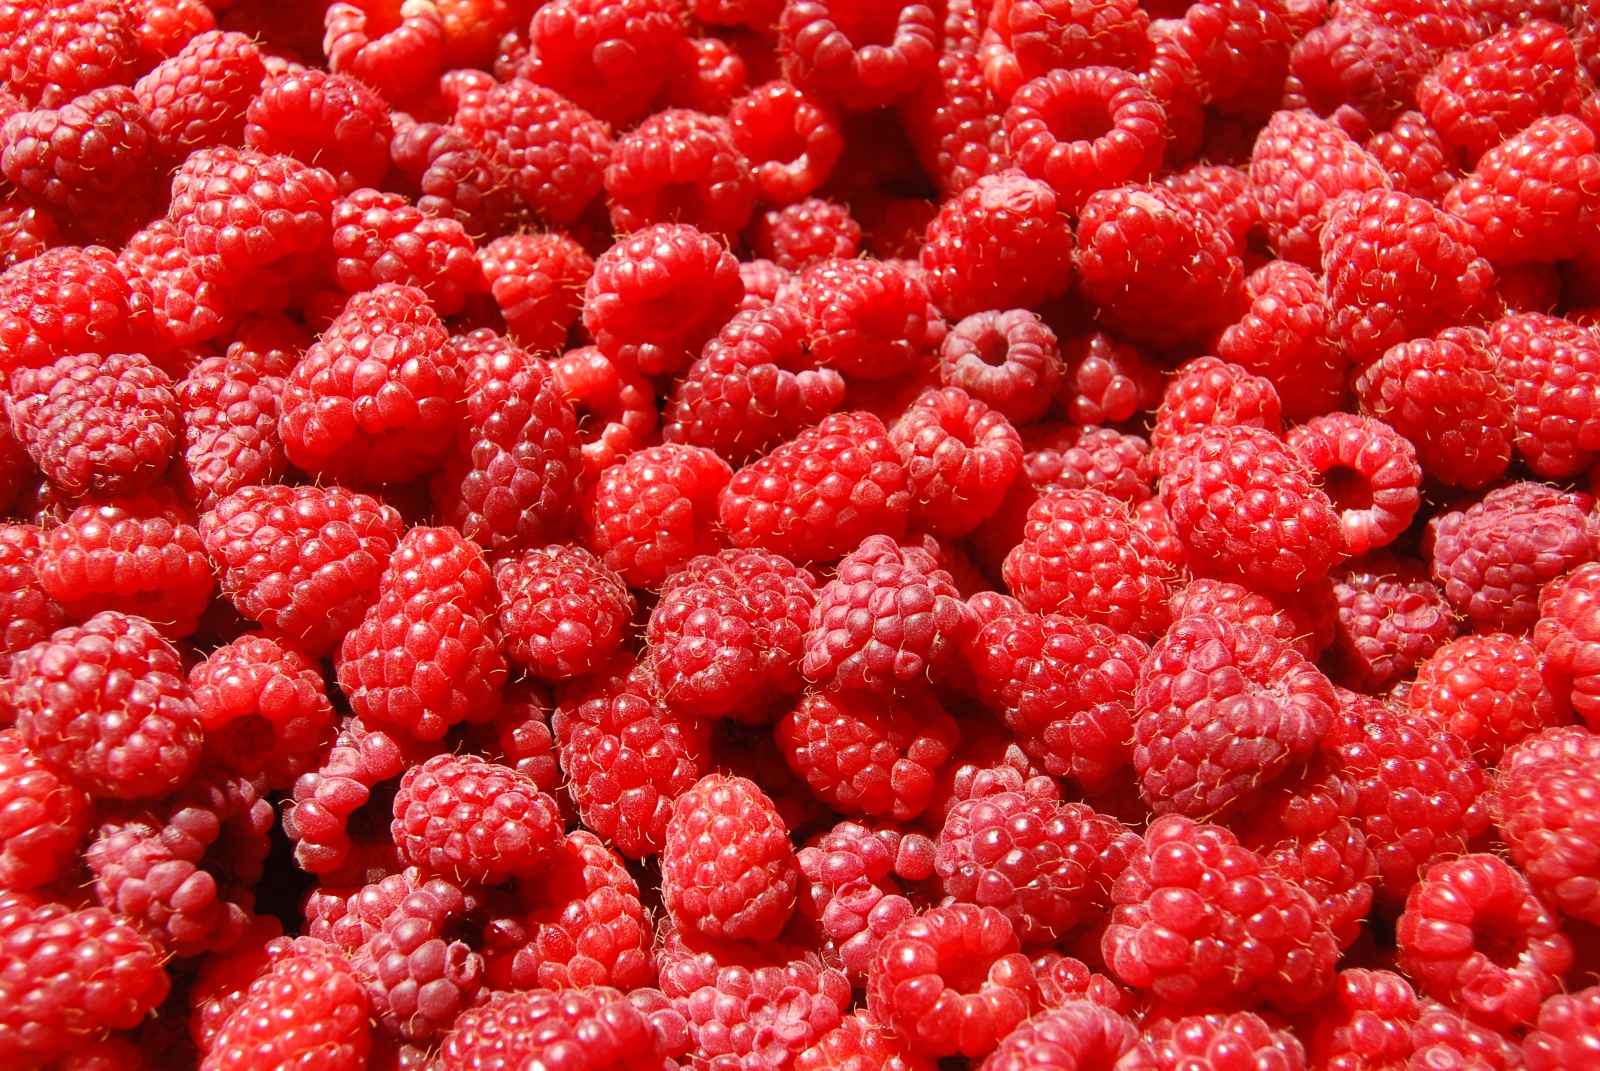 Raspberries-raspberries-35243775-3872-2592.jpg